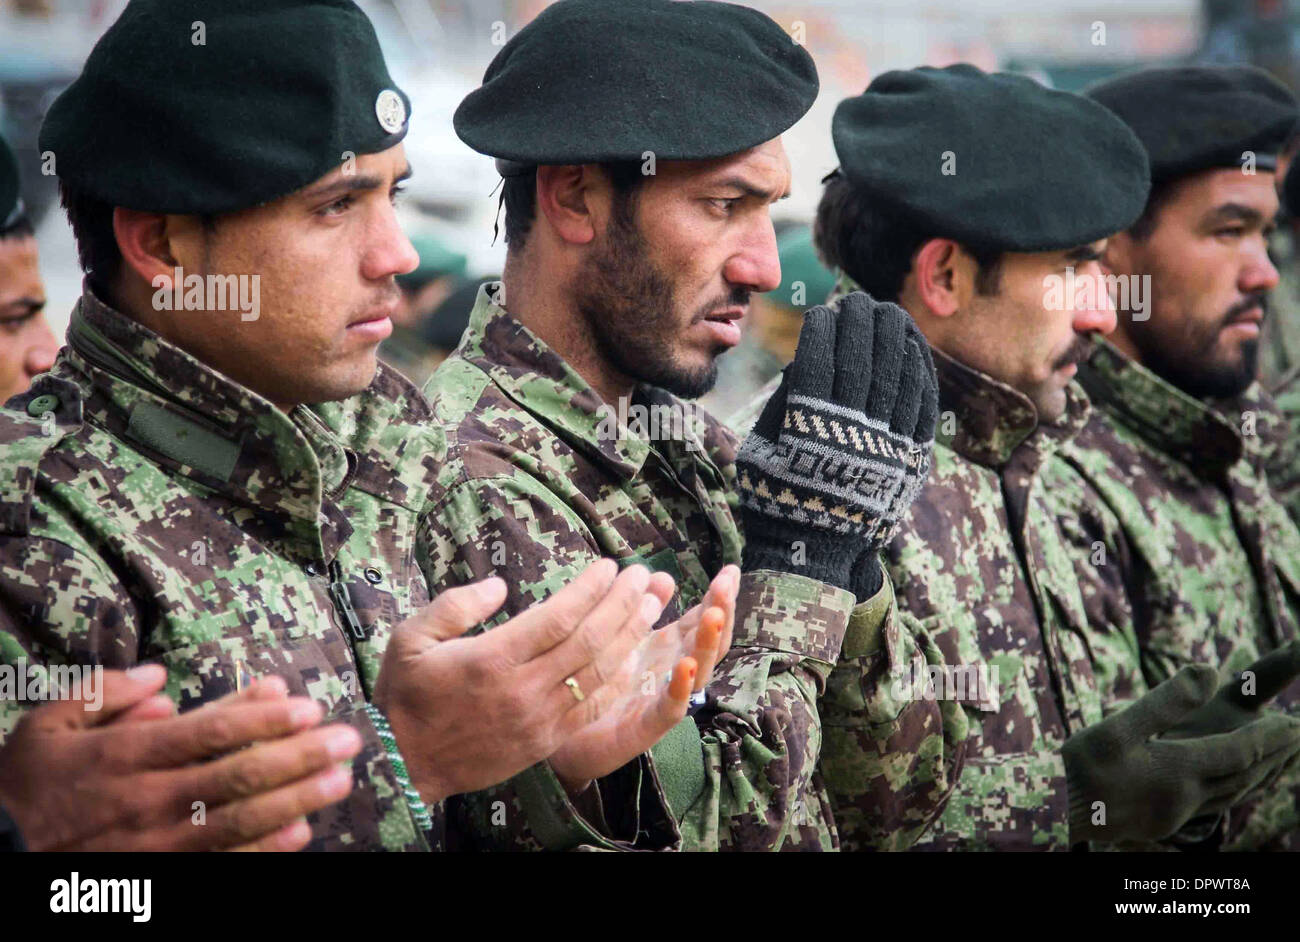 Esercito Nazionale Afghano soldati pregare nel corso di una cerimonia presso il Camp Eagle Dicembre 30, 2013 in provincia di Zabul, Afghanistan. Foto Stock